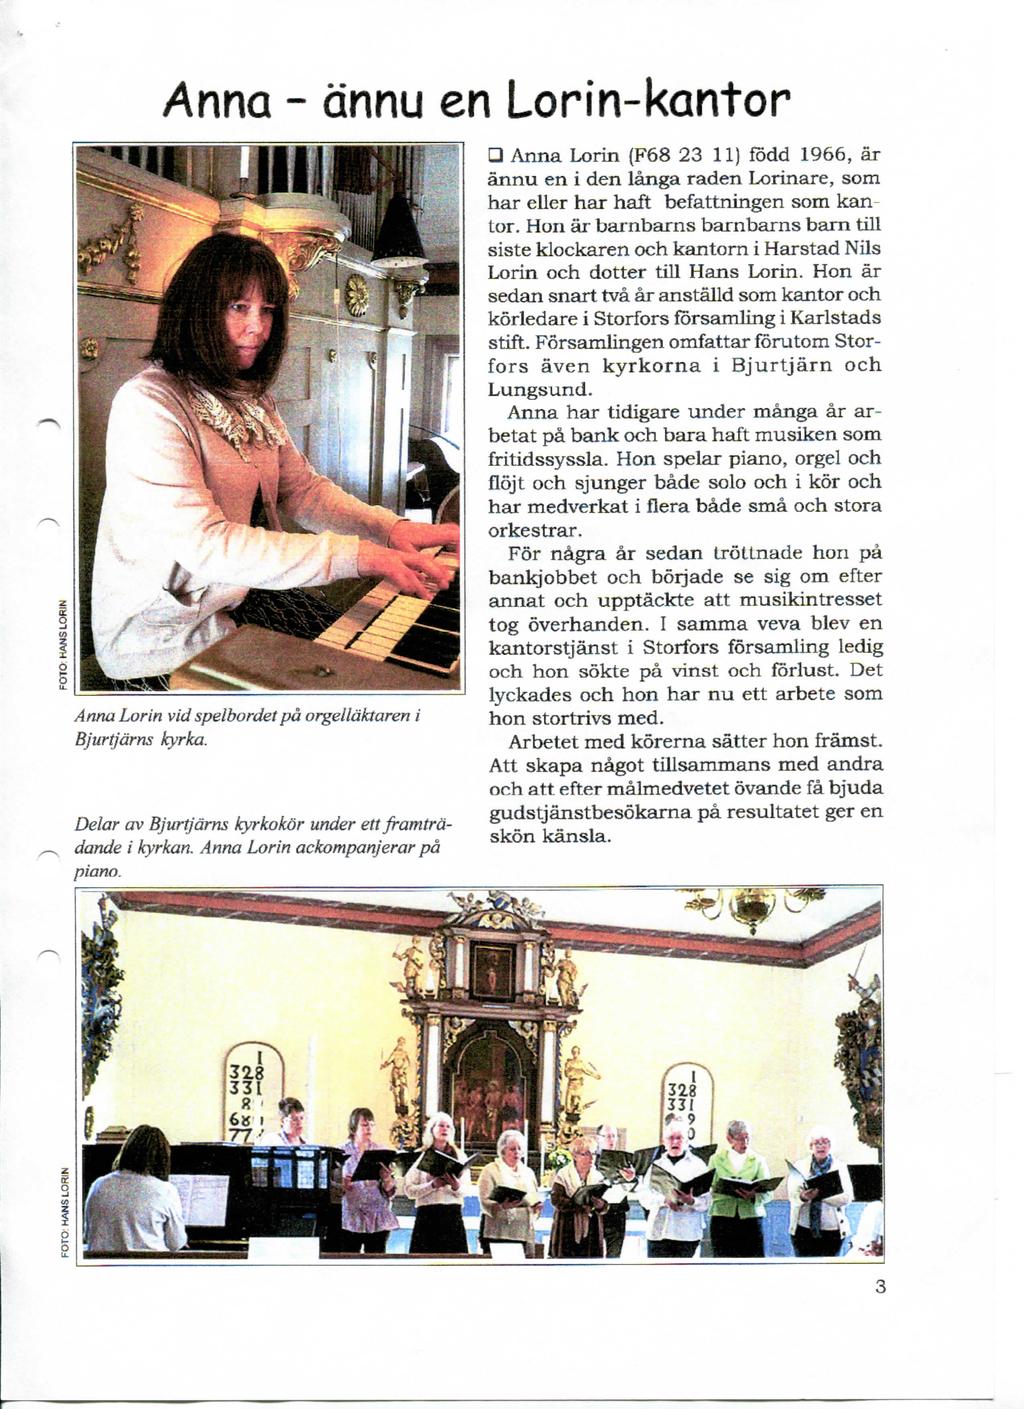 Anna - dnnu en Lorin-kantor Anna Lorin vid spelbordet pa orgelldktaren i Bjurtjdrns kyrka. Delar av Bjurtjdrns kyrkokor under ett framtrddande i kyrkan. Anna Lorin ackompanjerar pd piano.